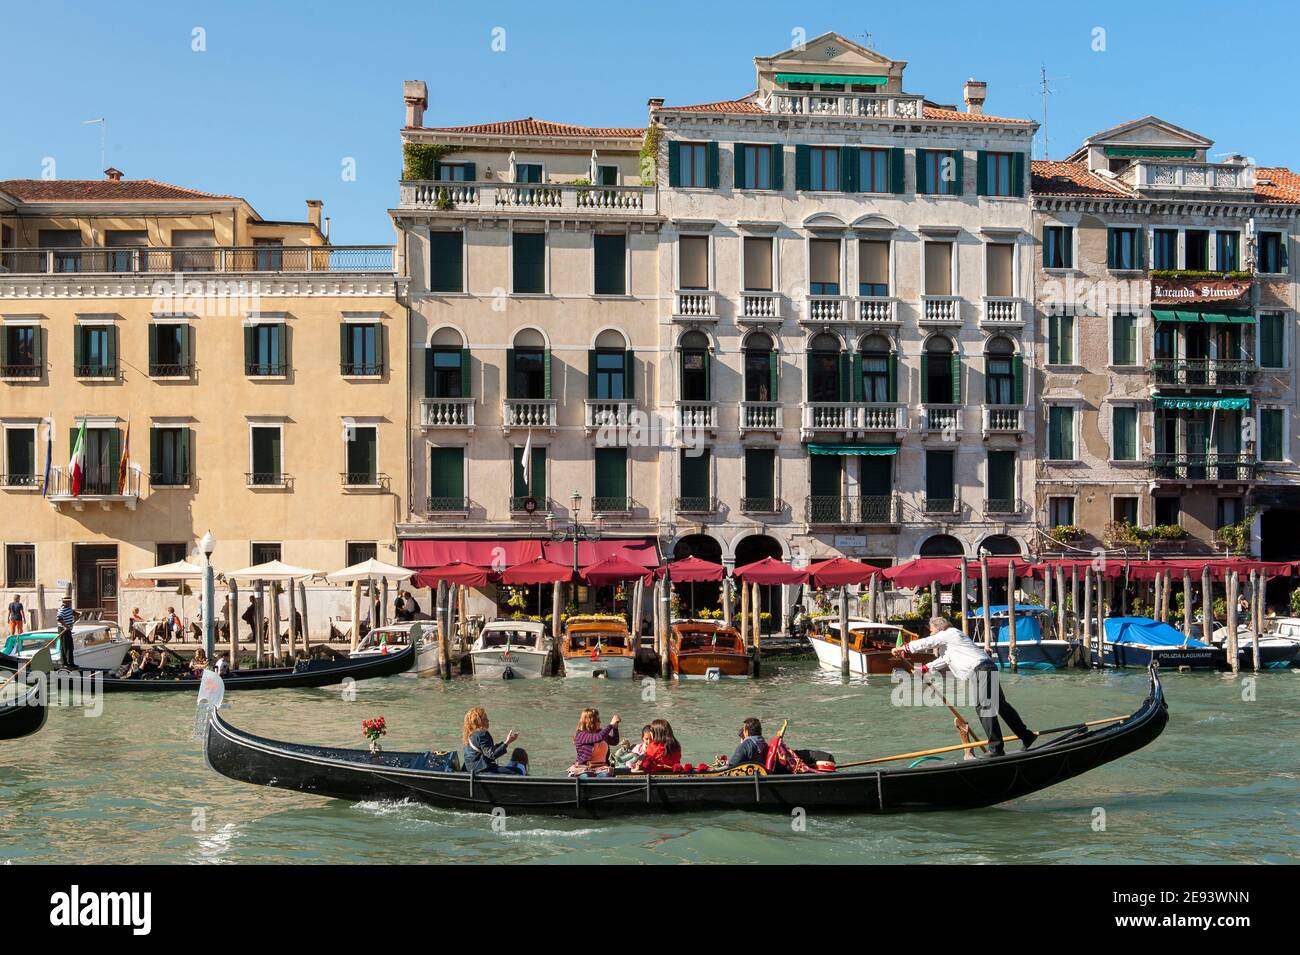 Touristen genießen eine Gondelfahrt auf dem Canale Grande in der schönen Stadt Venedig, Italien. Stockfoto